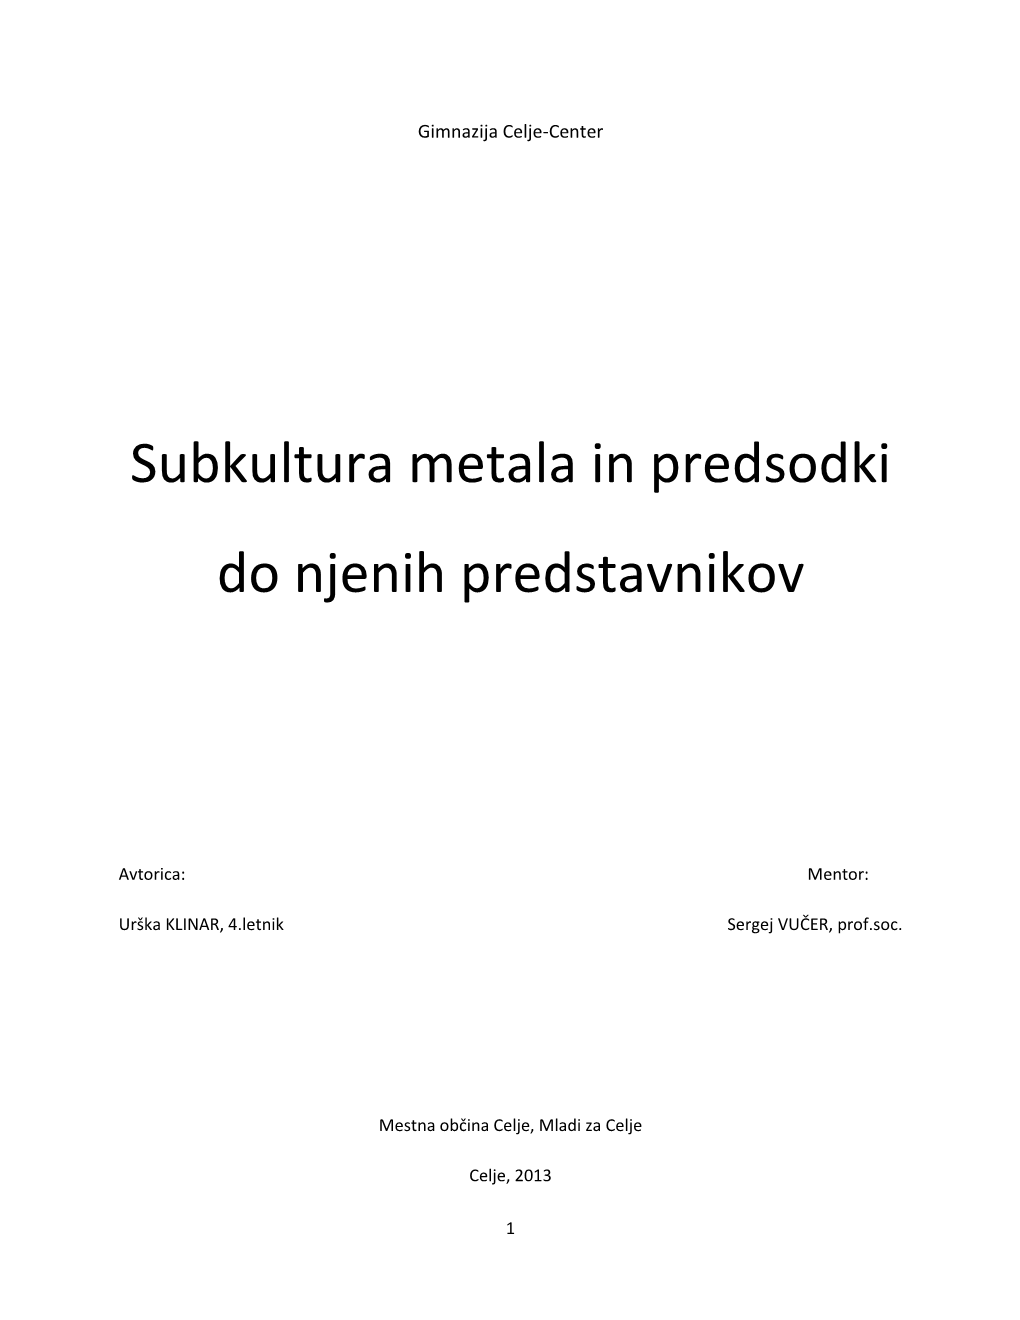 Subkultura Metala in Predsodki Do Njenih Predstavnikov